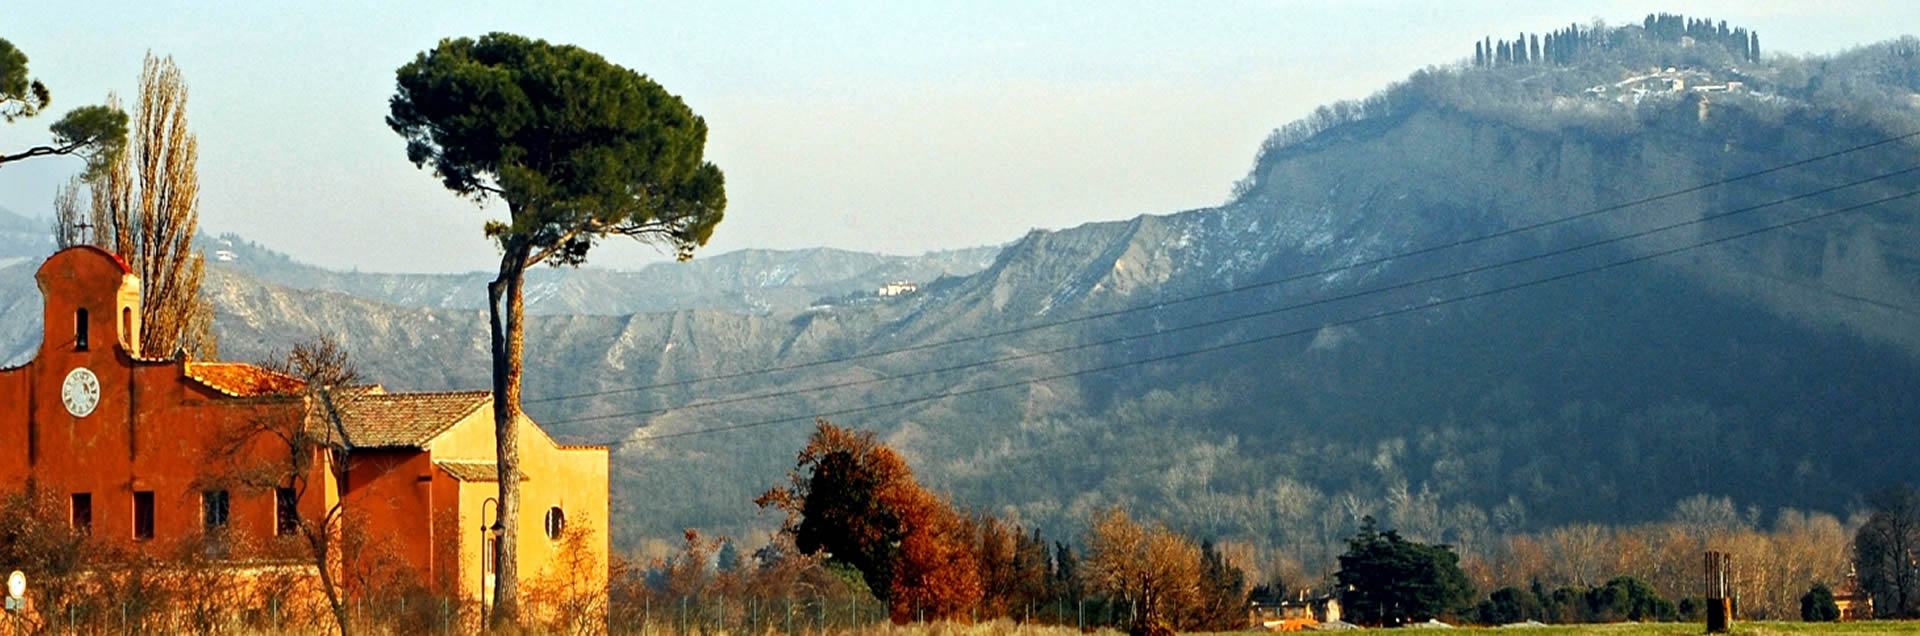 Paesaggio Sasso Marconi